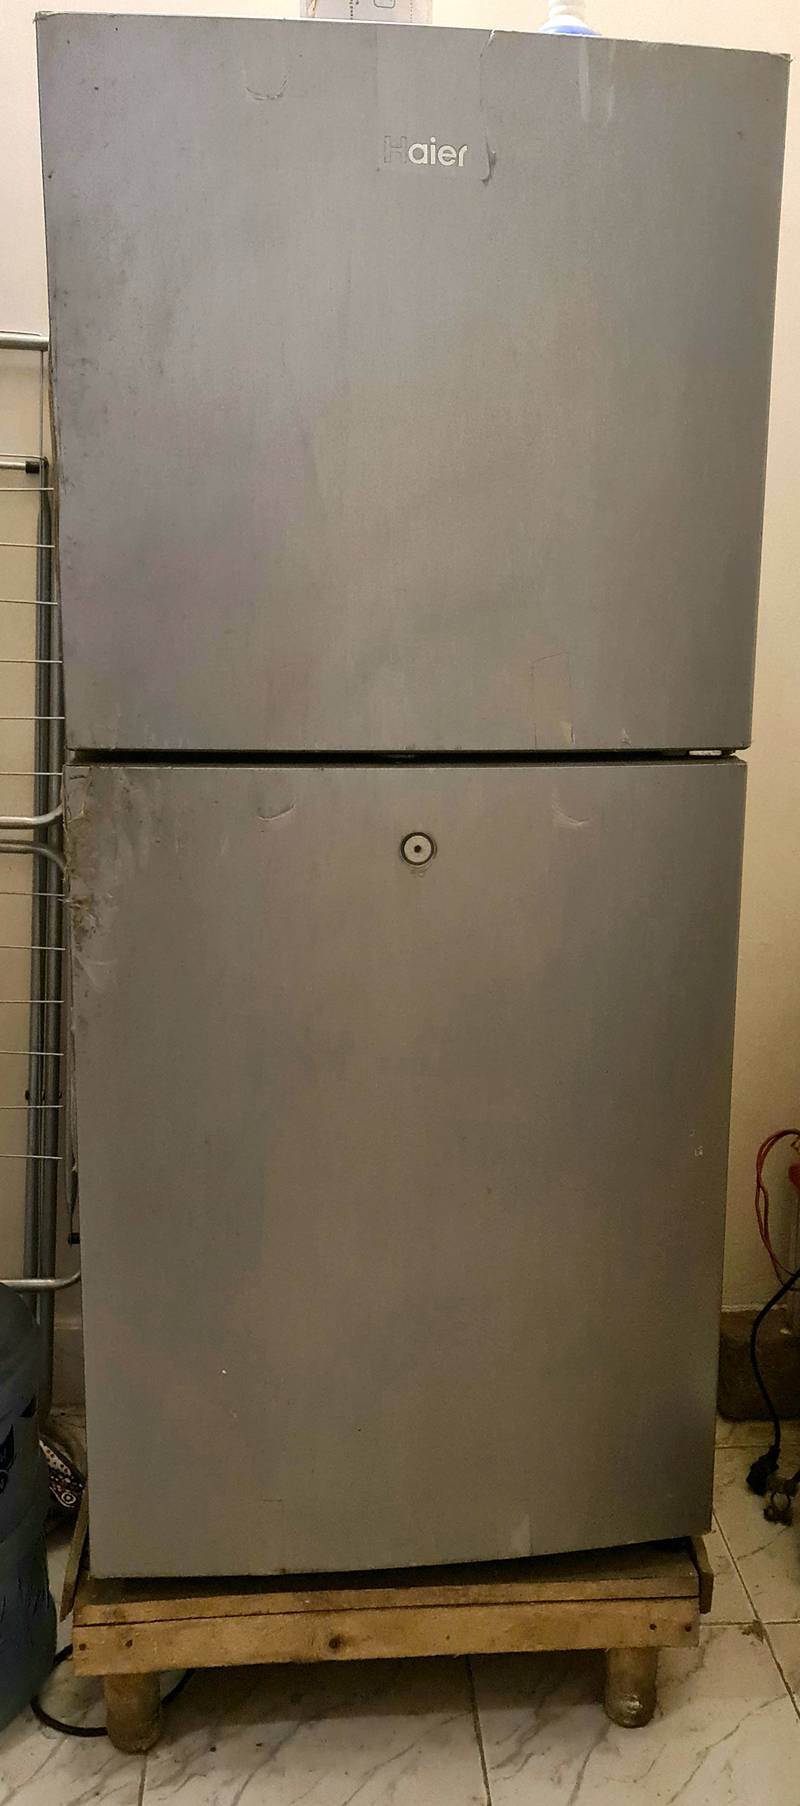 Haier Inverter Refrigerator HRF 216 Silver 0